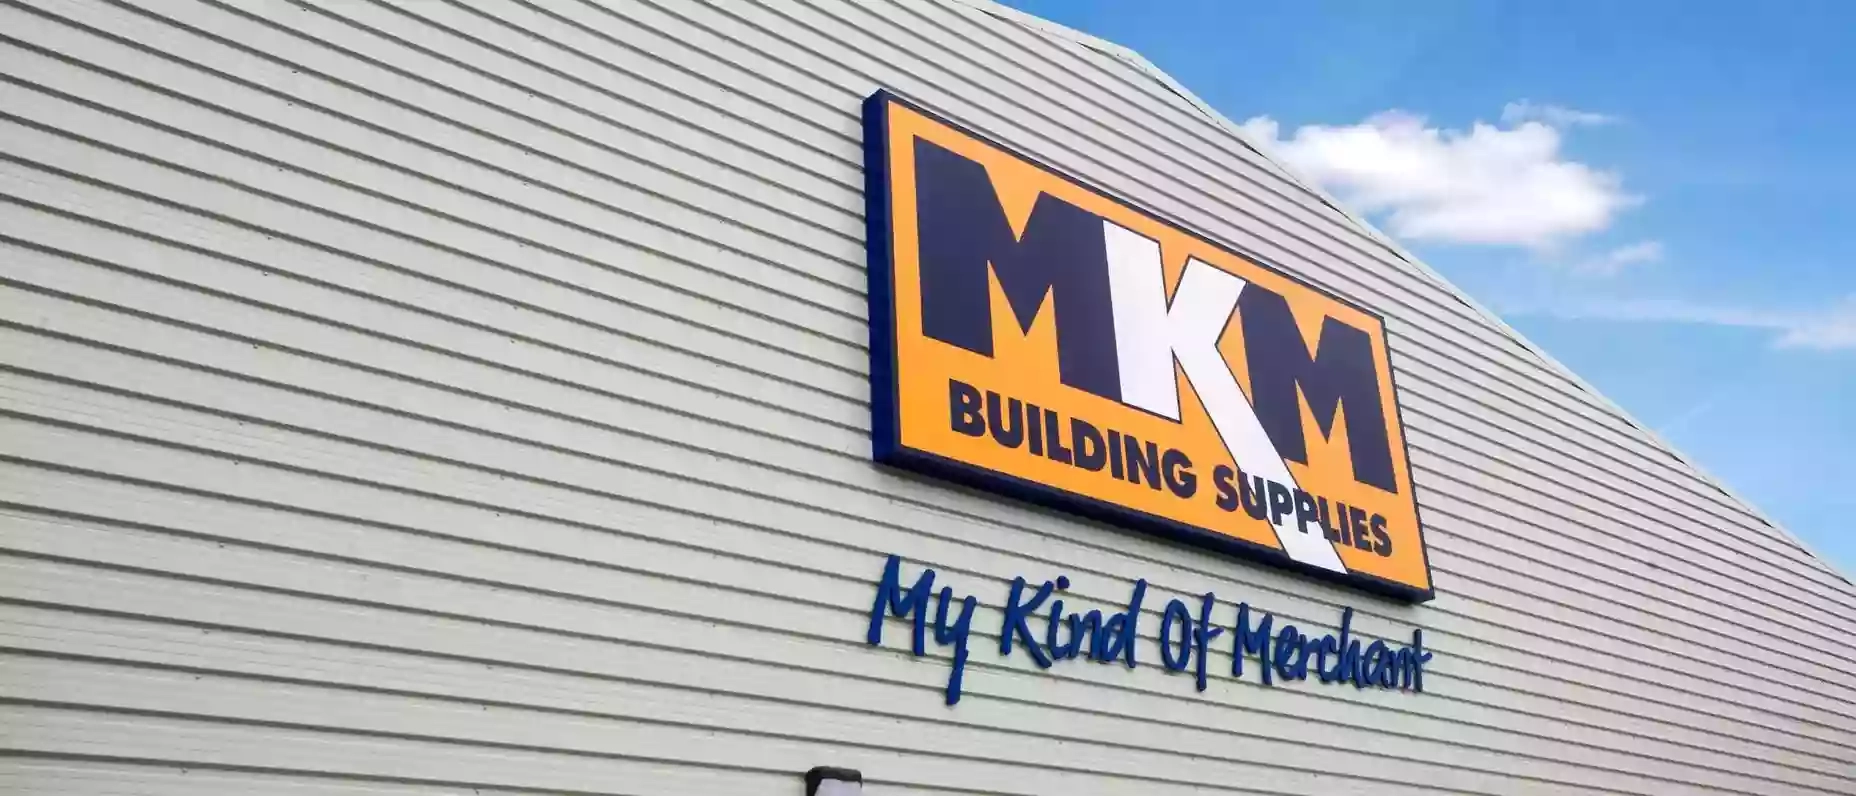 MKM Building Supplies Aberdeen